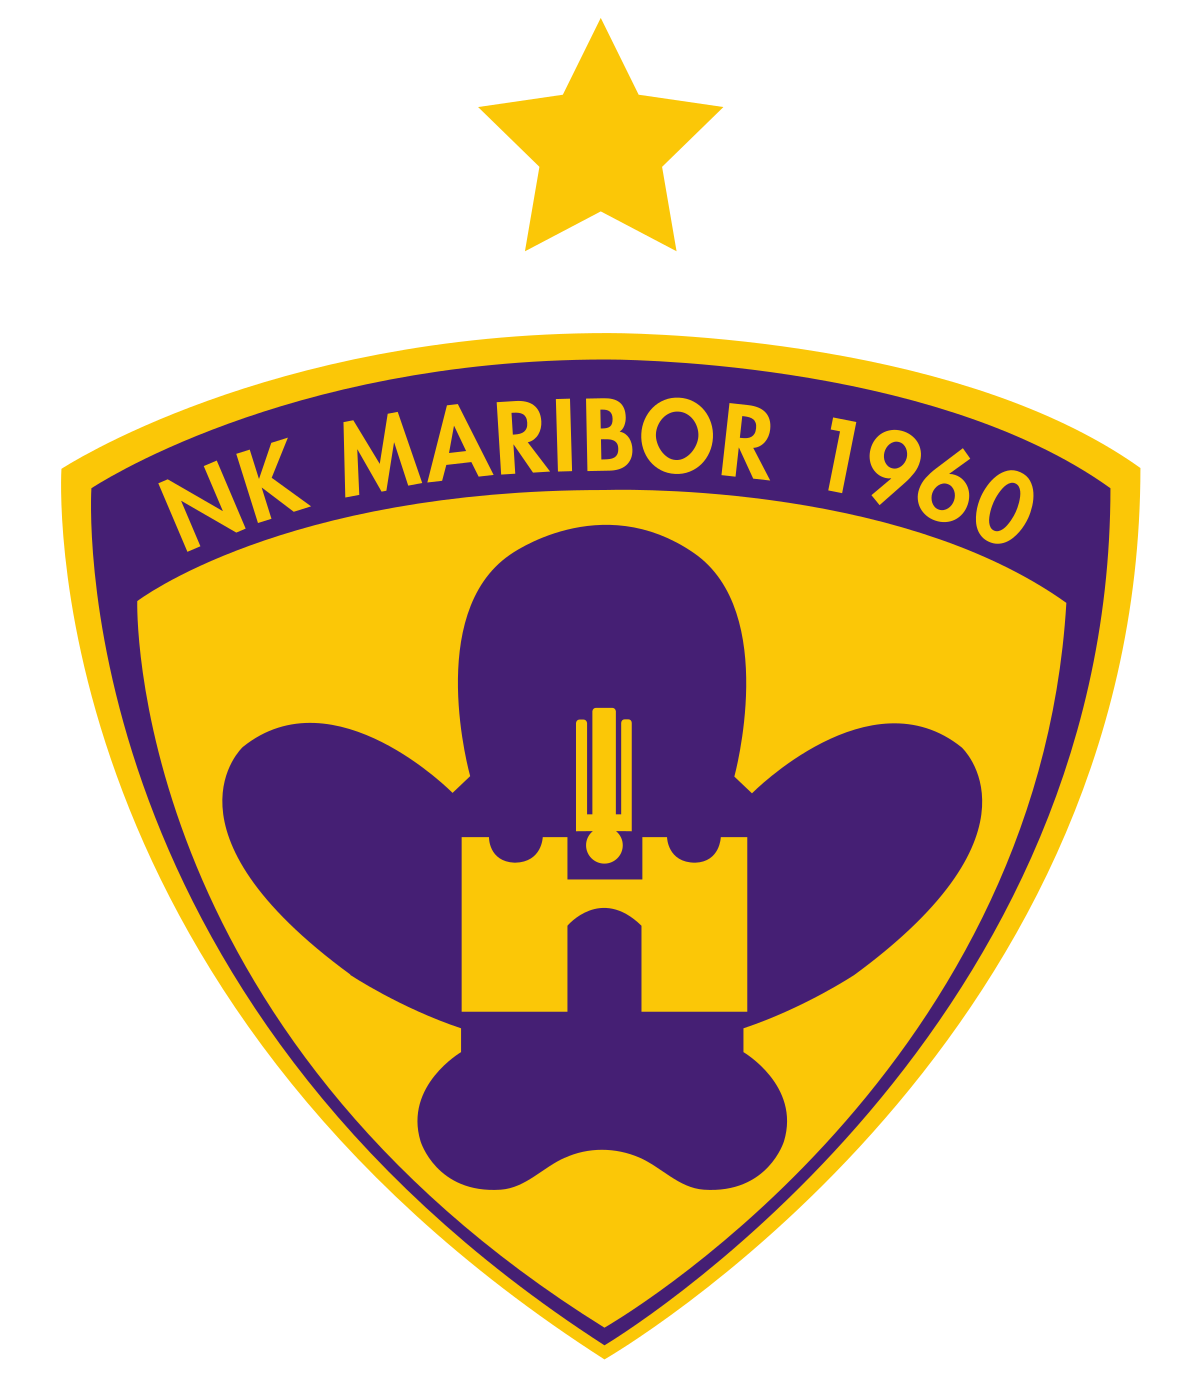 Câu lạc bộ bóng đá Maribor